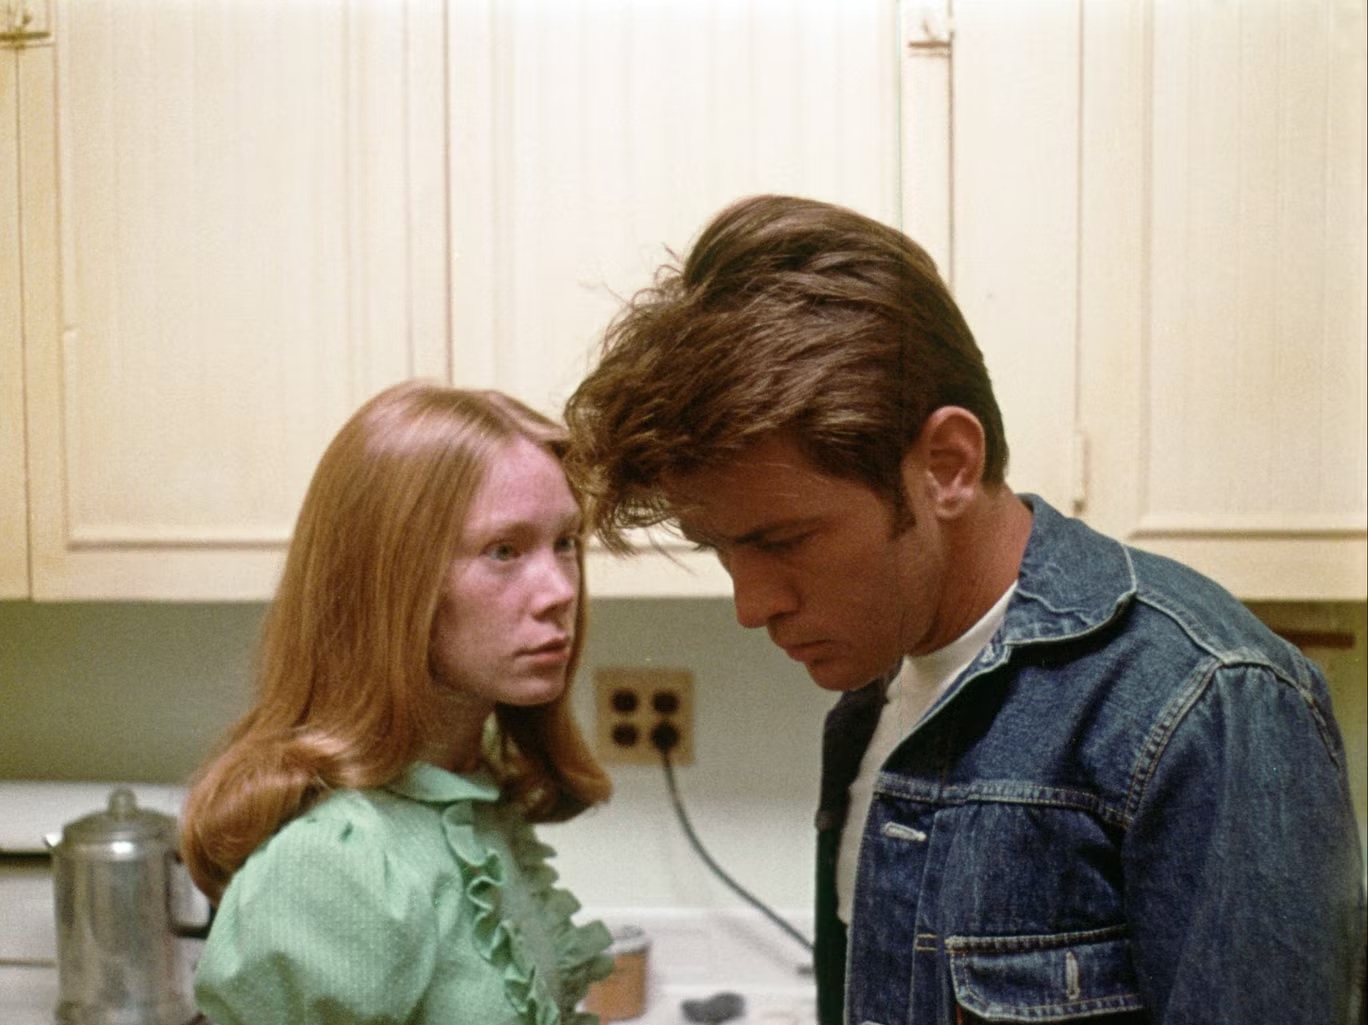 لعب مارتن شين (على اليمين) دور القاتل المزاجي كيت، بناء على نص تشارلز ستاركويذر، في فيلم "بادلاندز" (وارنر بروس 1973)